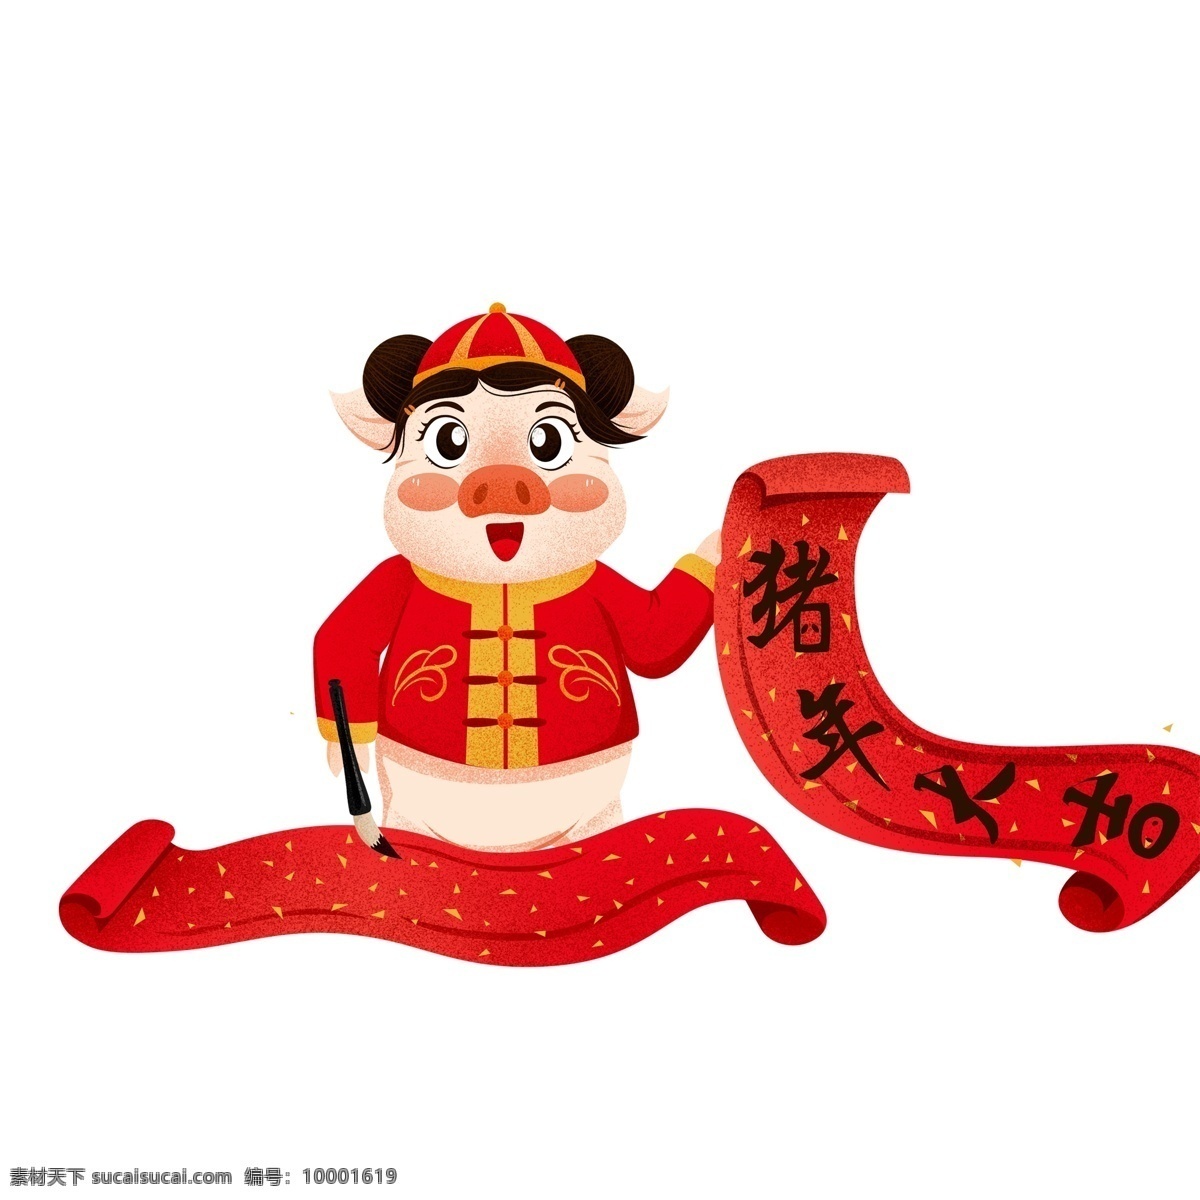 喜庆 写 对联 猪 卡通 毛笔 中国风 插画 写对联 小猪 psd设计 2019年 过年 小猪形象 猪年形象